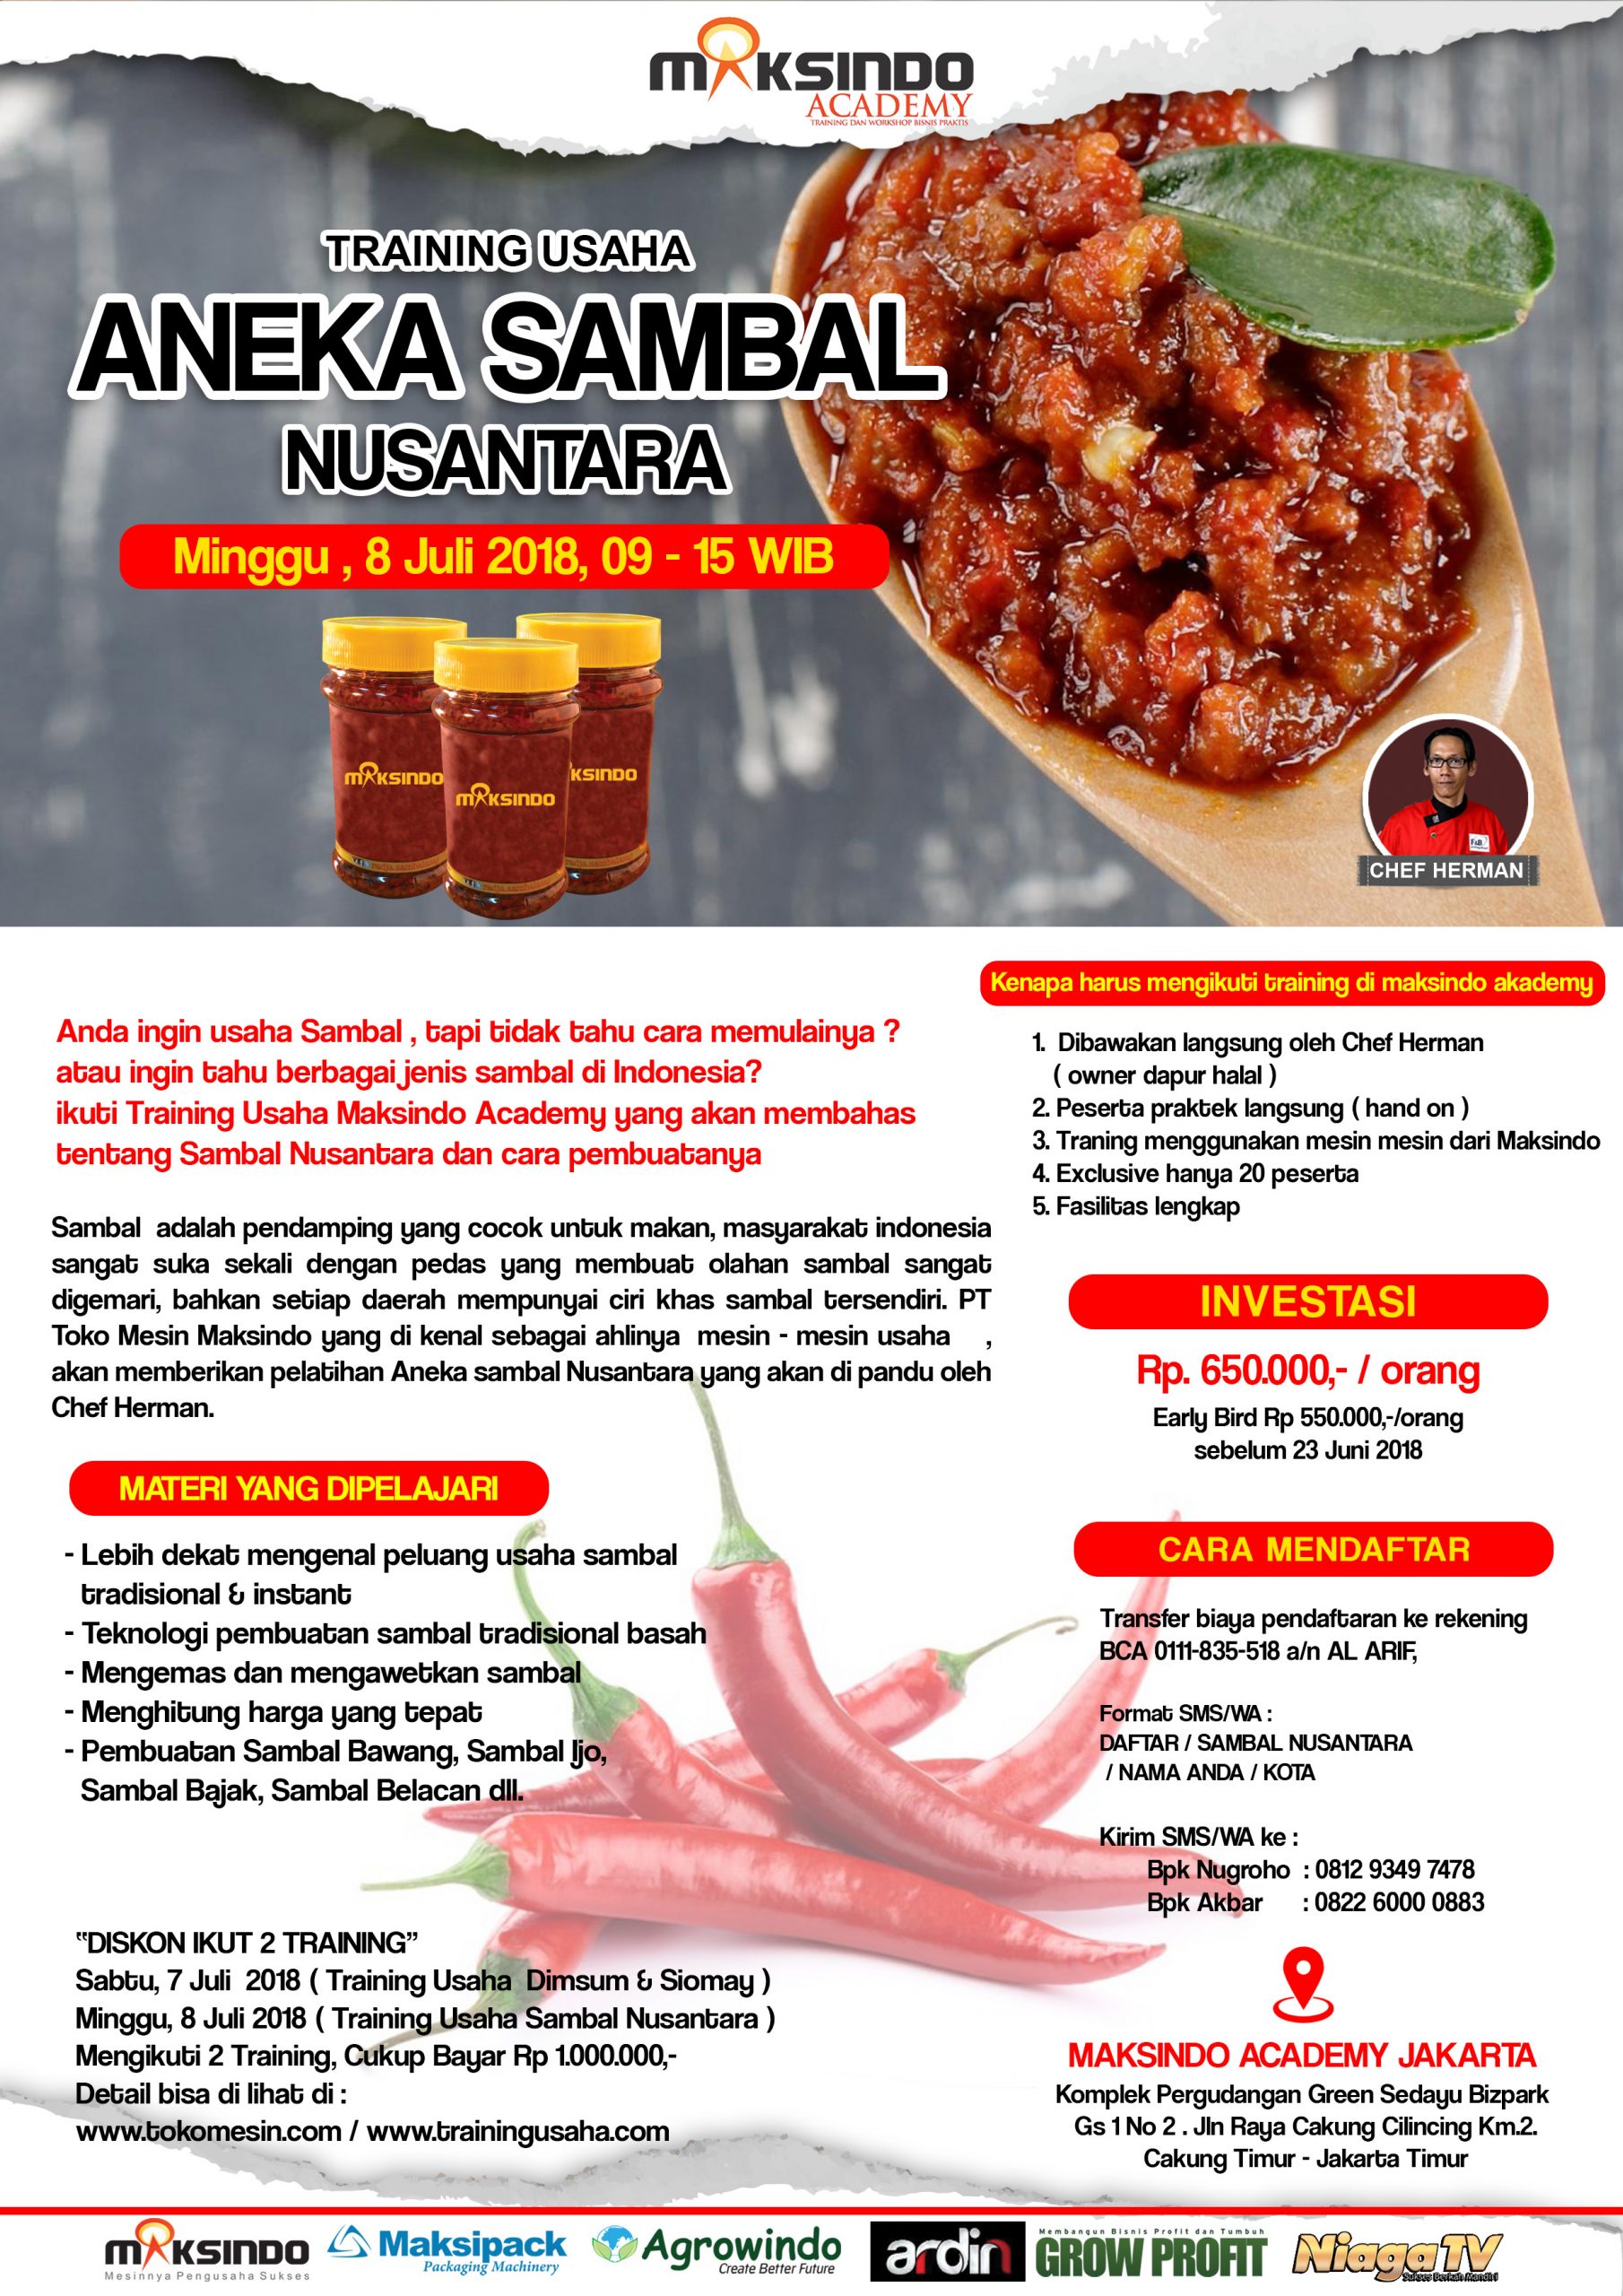 Training Usaha Aneka Sambal Nusantara, 8 Juli 2018